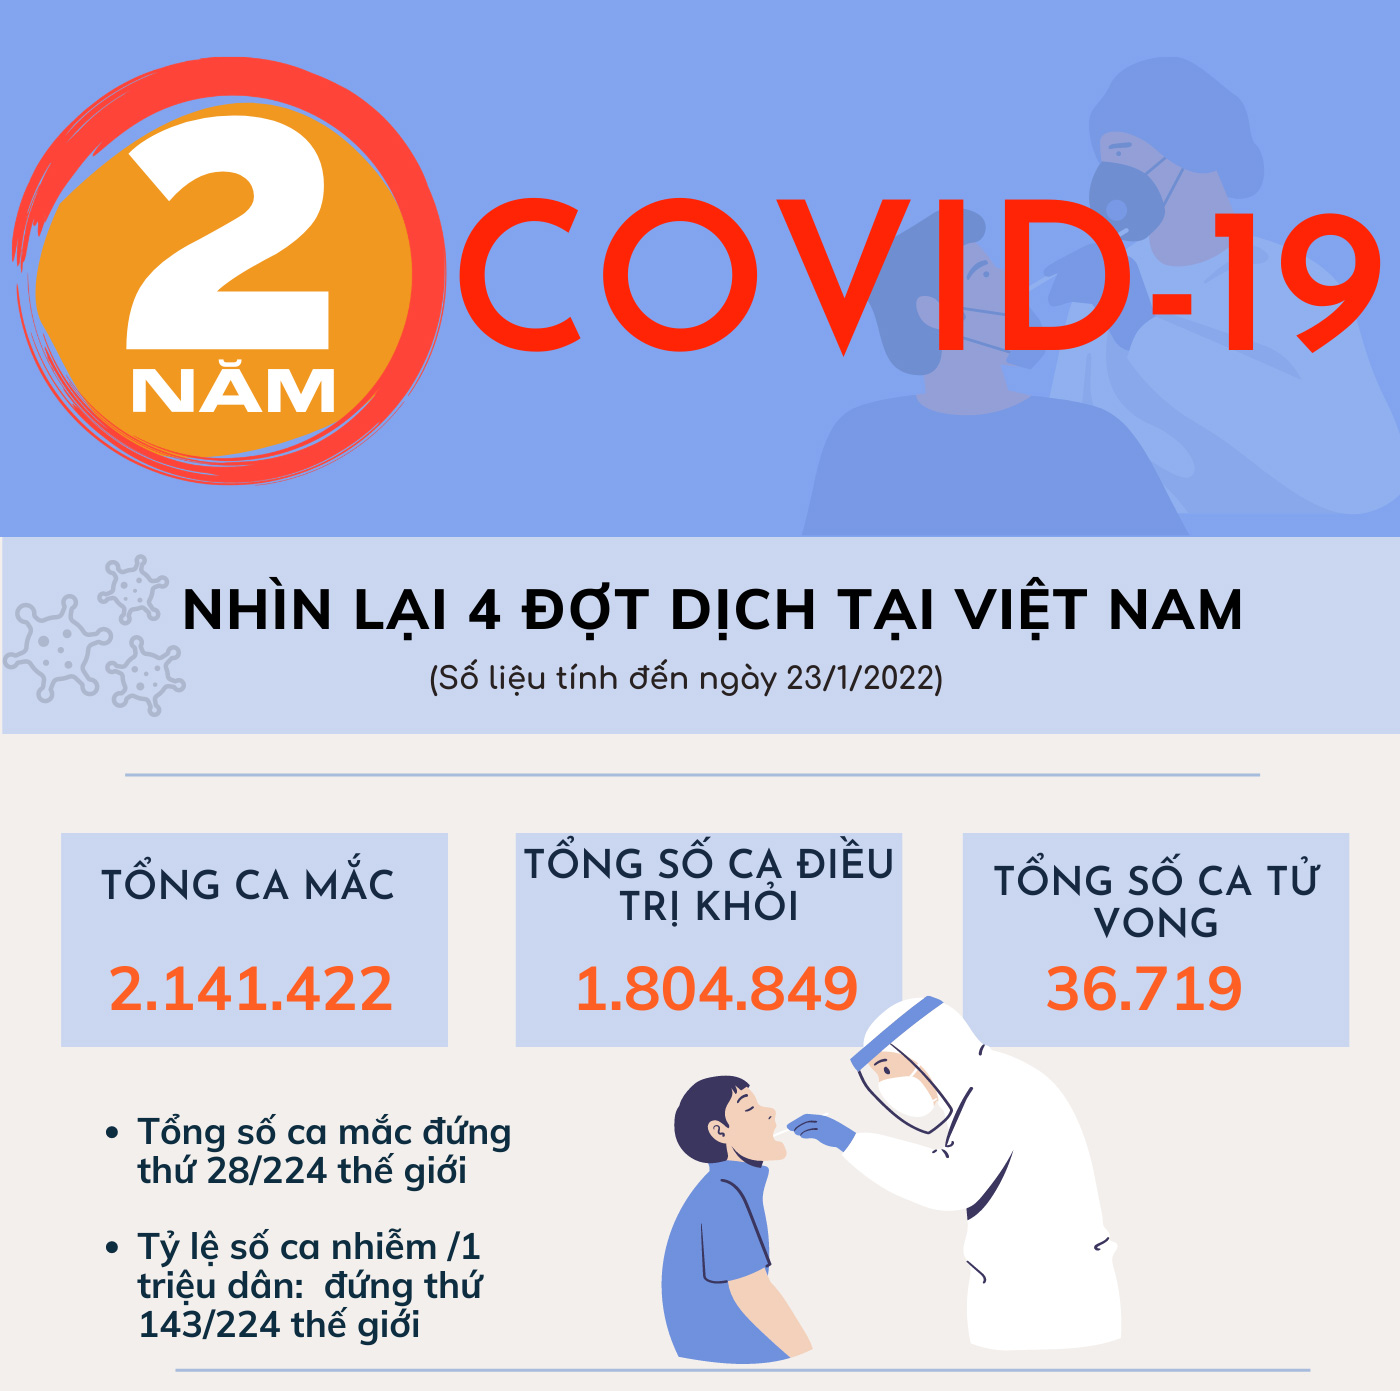 Nhìn lại 2 năm COVID-19 tại Việt Nam - 1